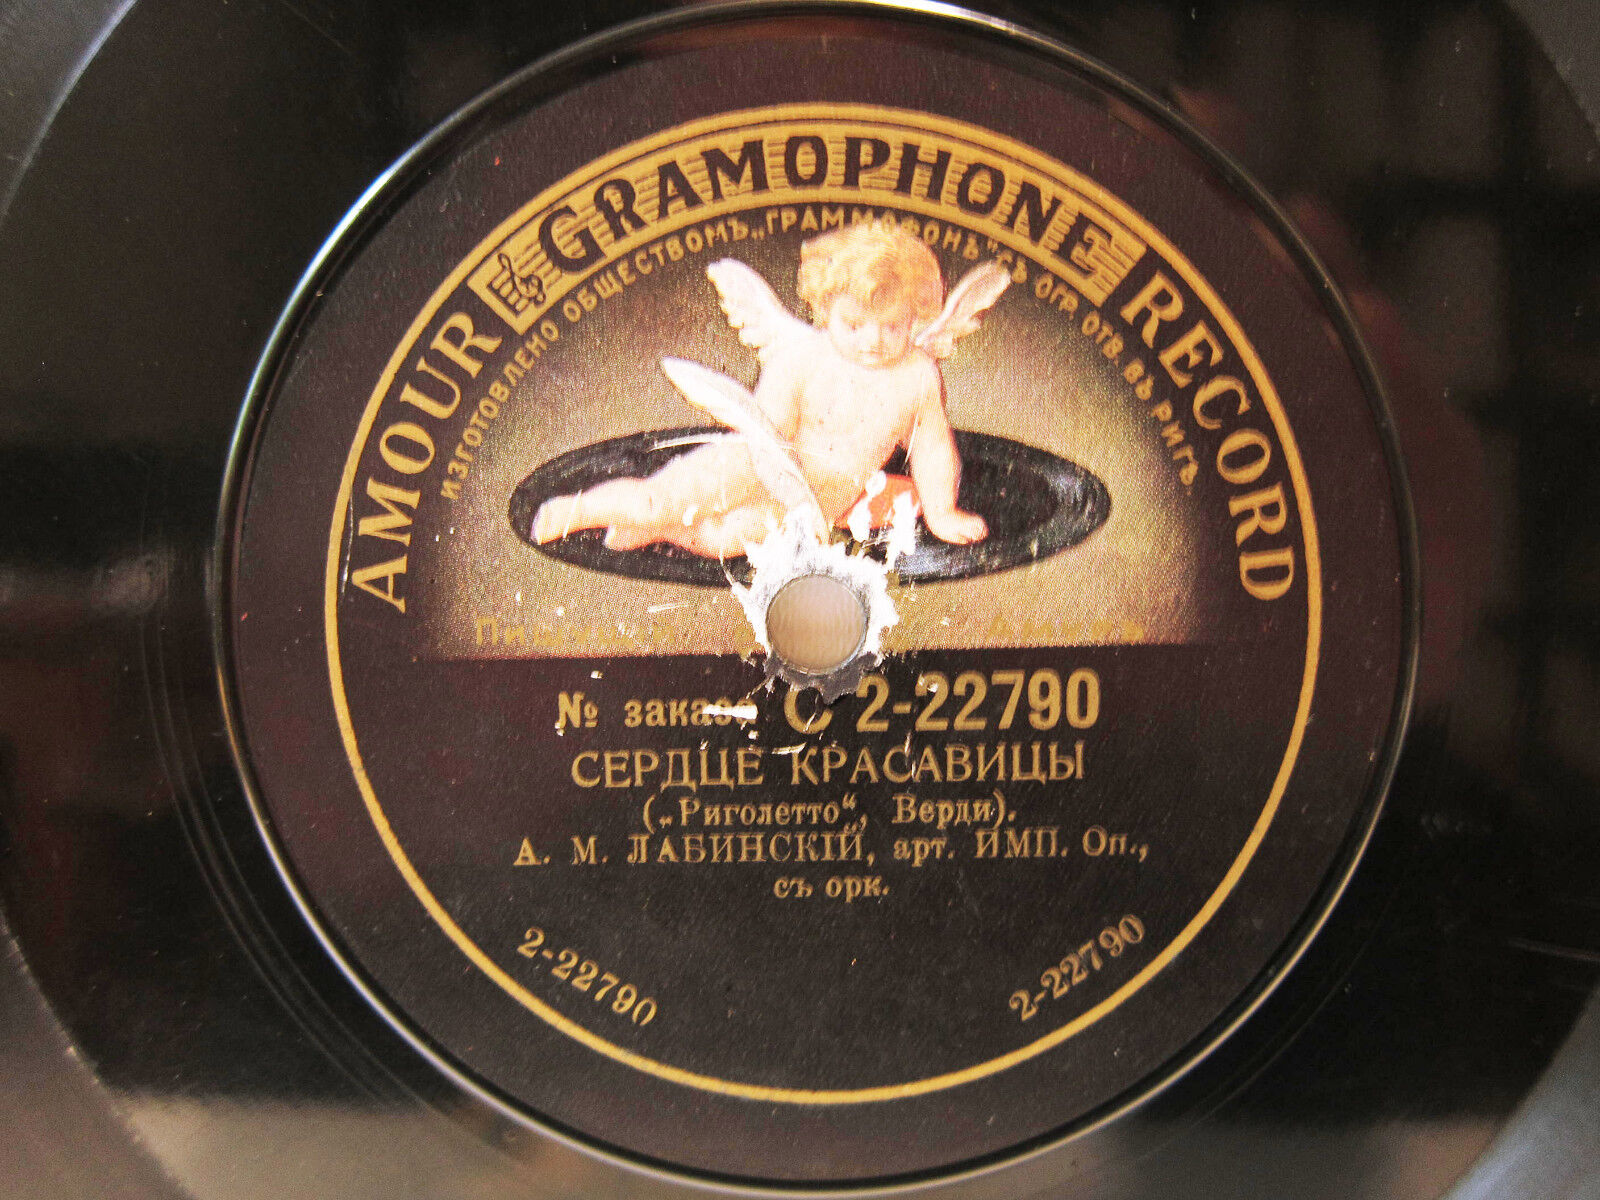 78rpm LABINSKY sings VERDI: La Donna E Mobile - RUSSIAN AMOUR GRAMOPHONE